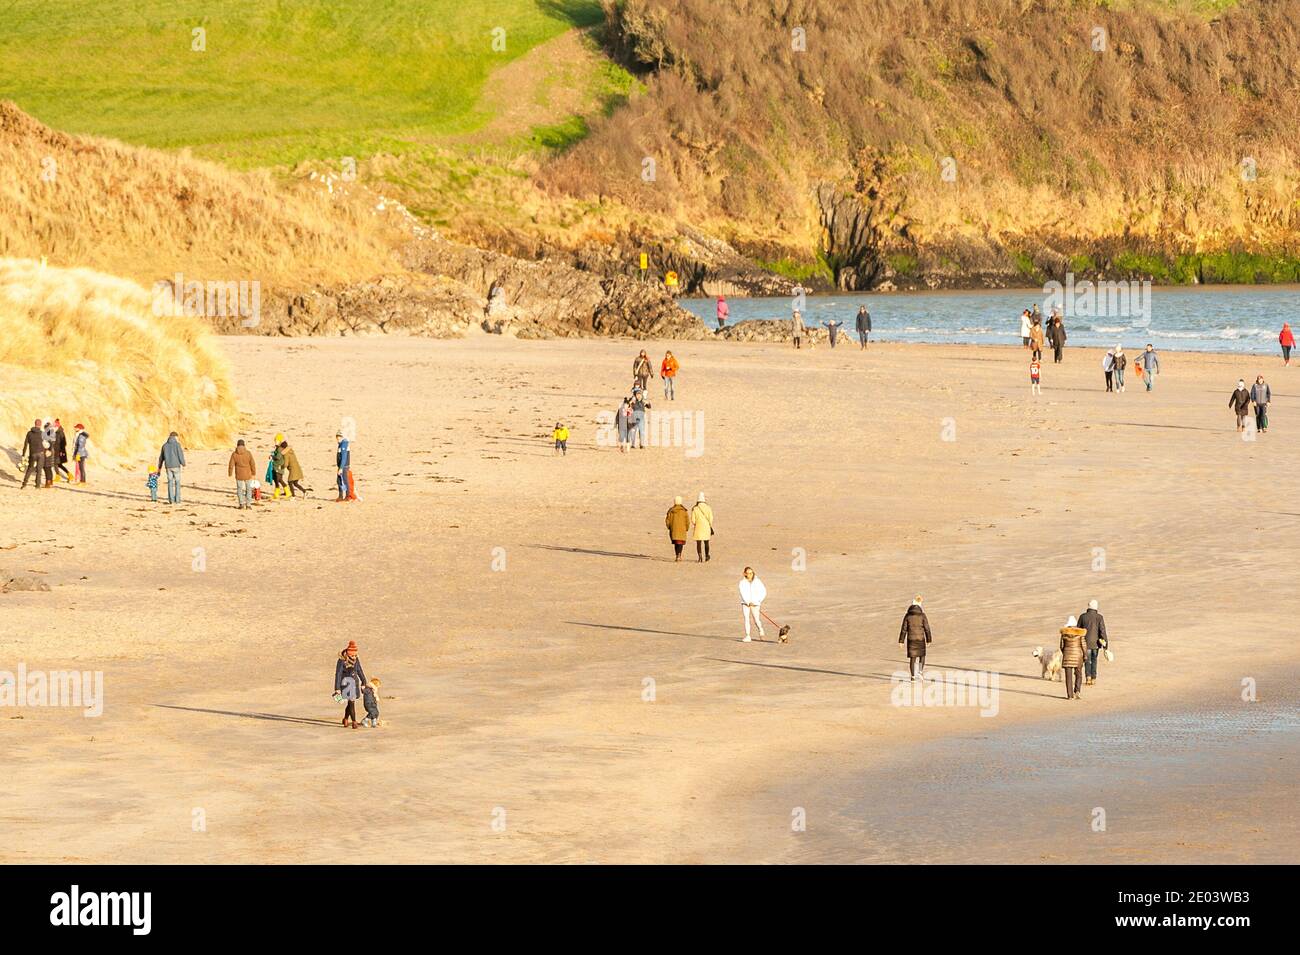 Inchydoney, West Cork, Irlande. 29 décembre 2020. Inchydoney Beach près de Clonakilty a été rempli de randonneurs et de surfeurs cet après-midi. Bien que froid et venteux, le soleil se déllantes, faisant de la plage une destination populaire. Crédit : AG News/Alay Live News Banque D'Images